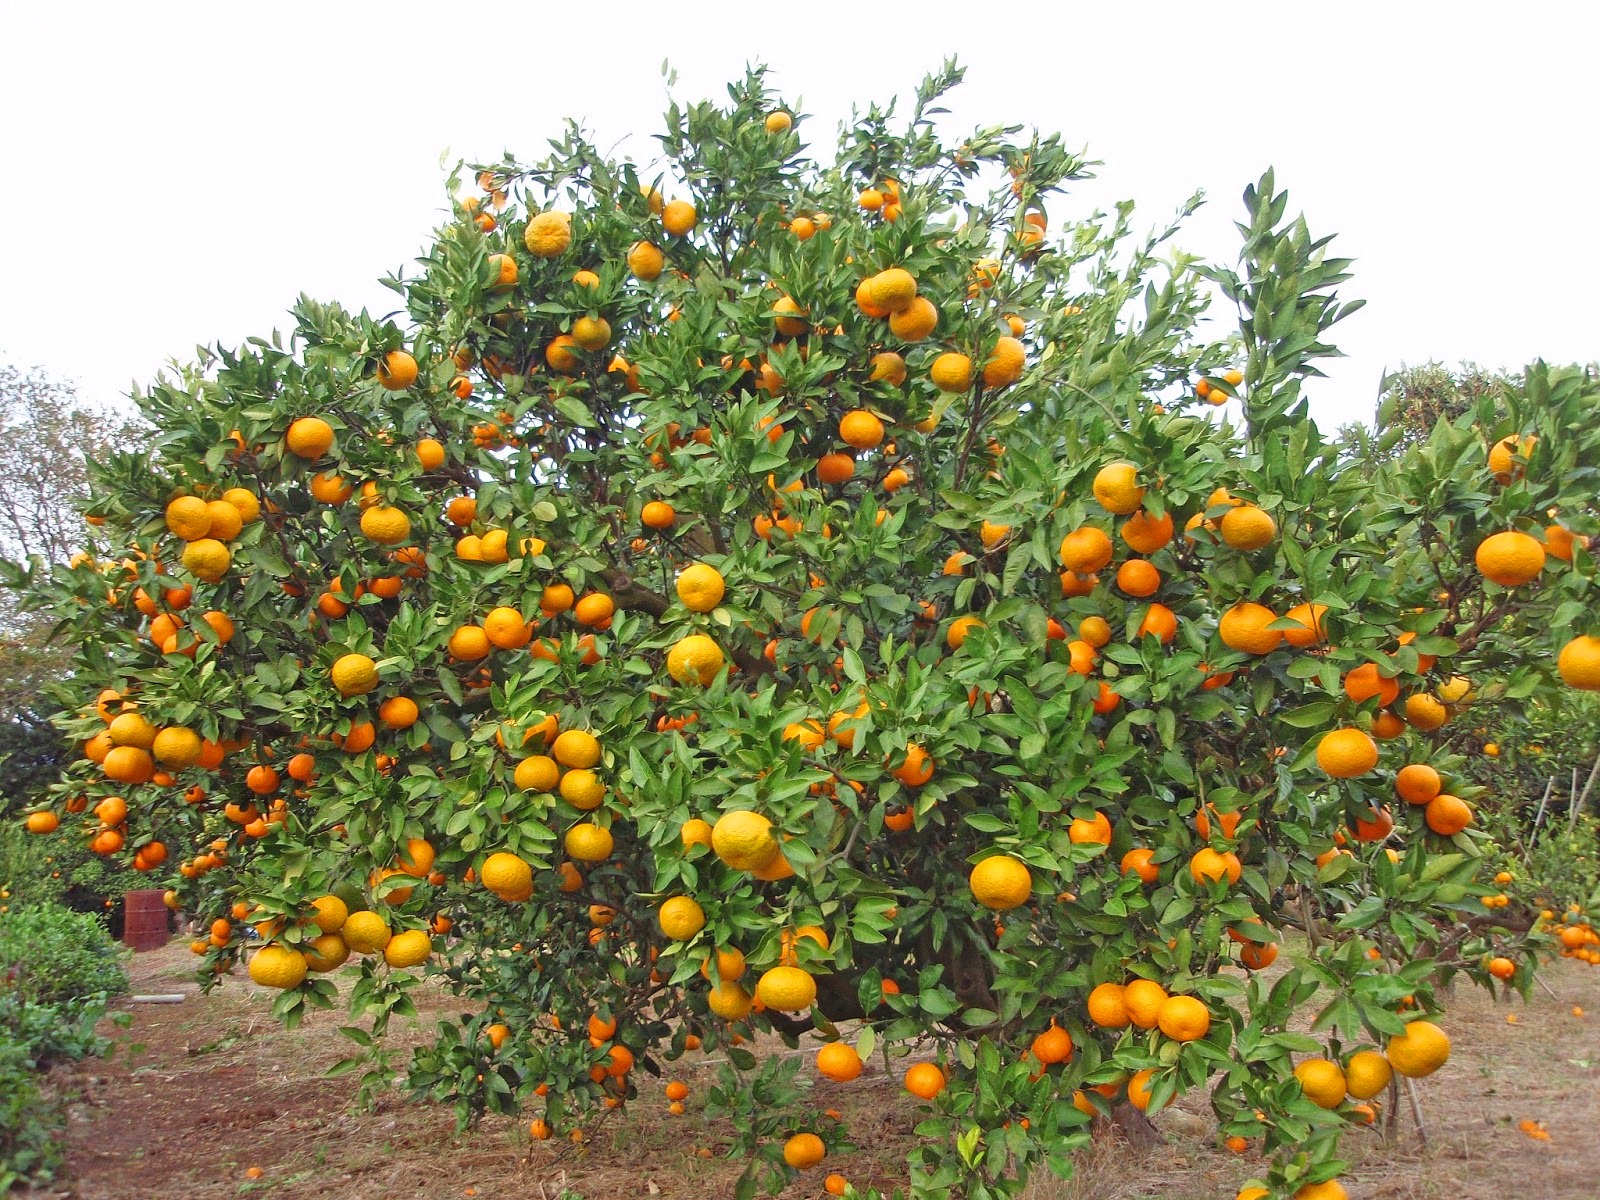  pohon jeruk Tani Sejahtera